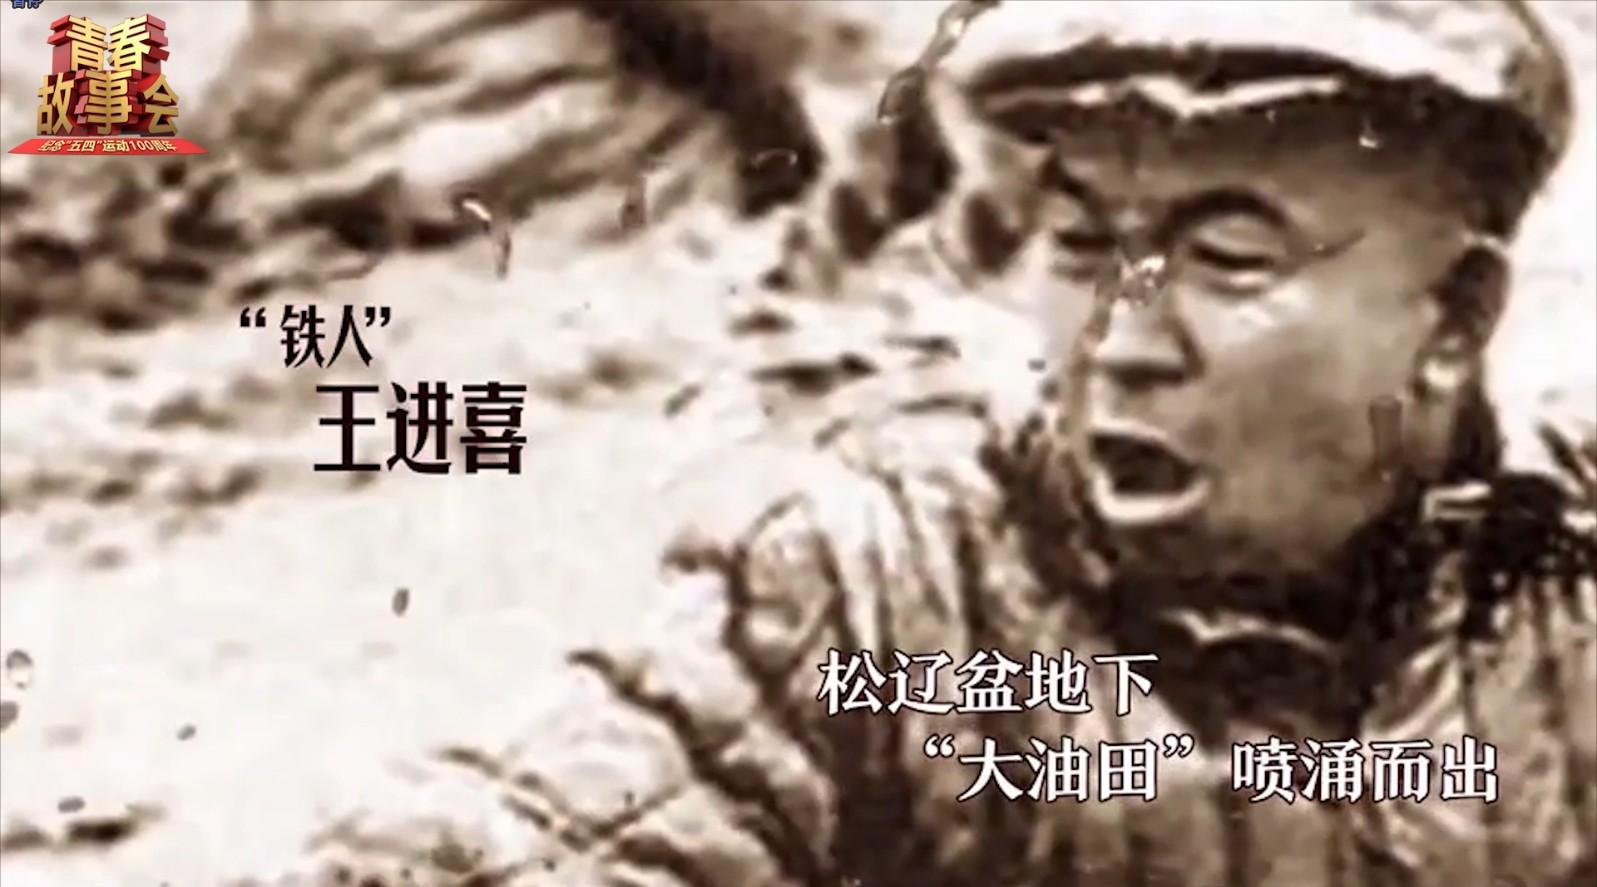 广州市纪念“五四运动”一百周年 先导片2热血青春